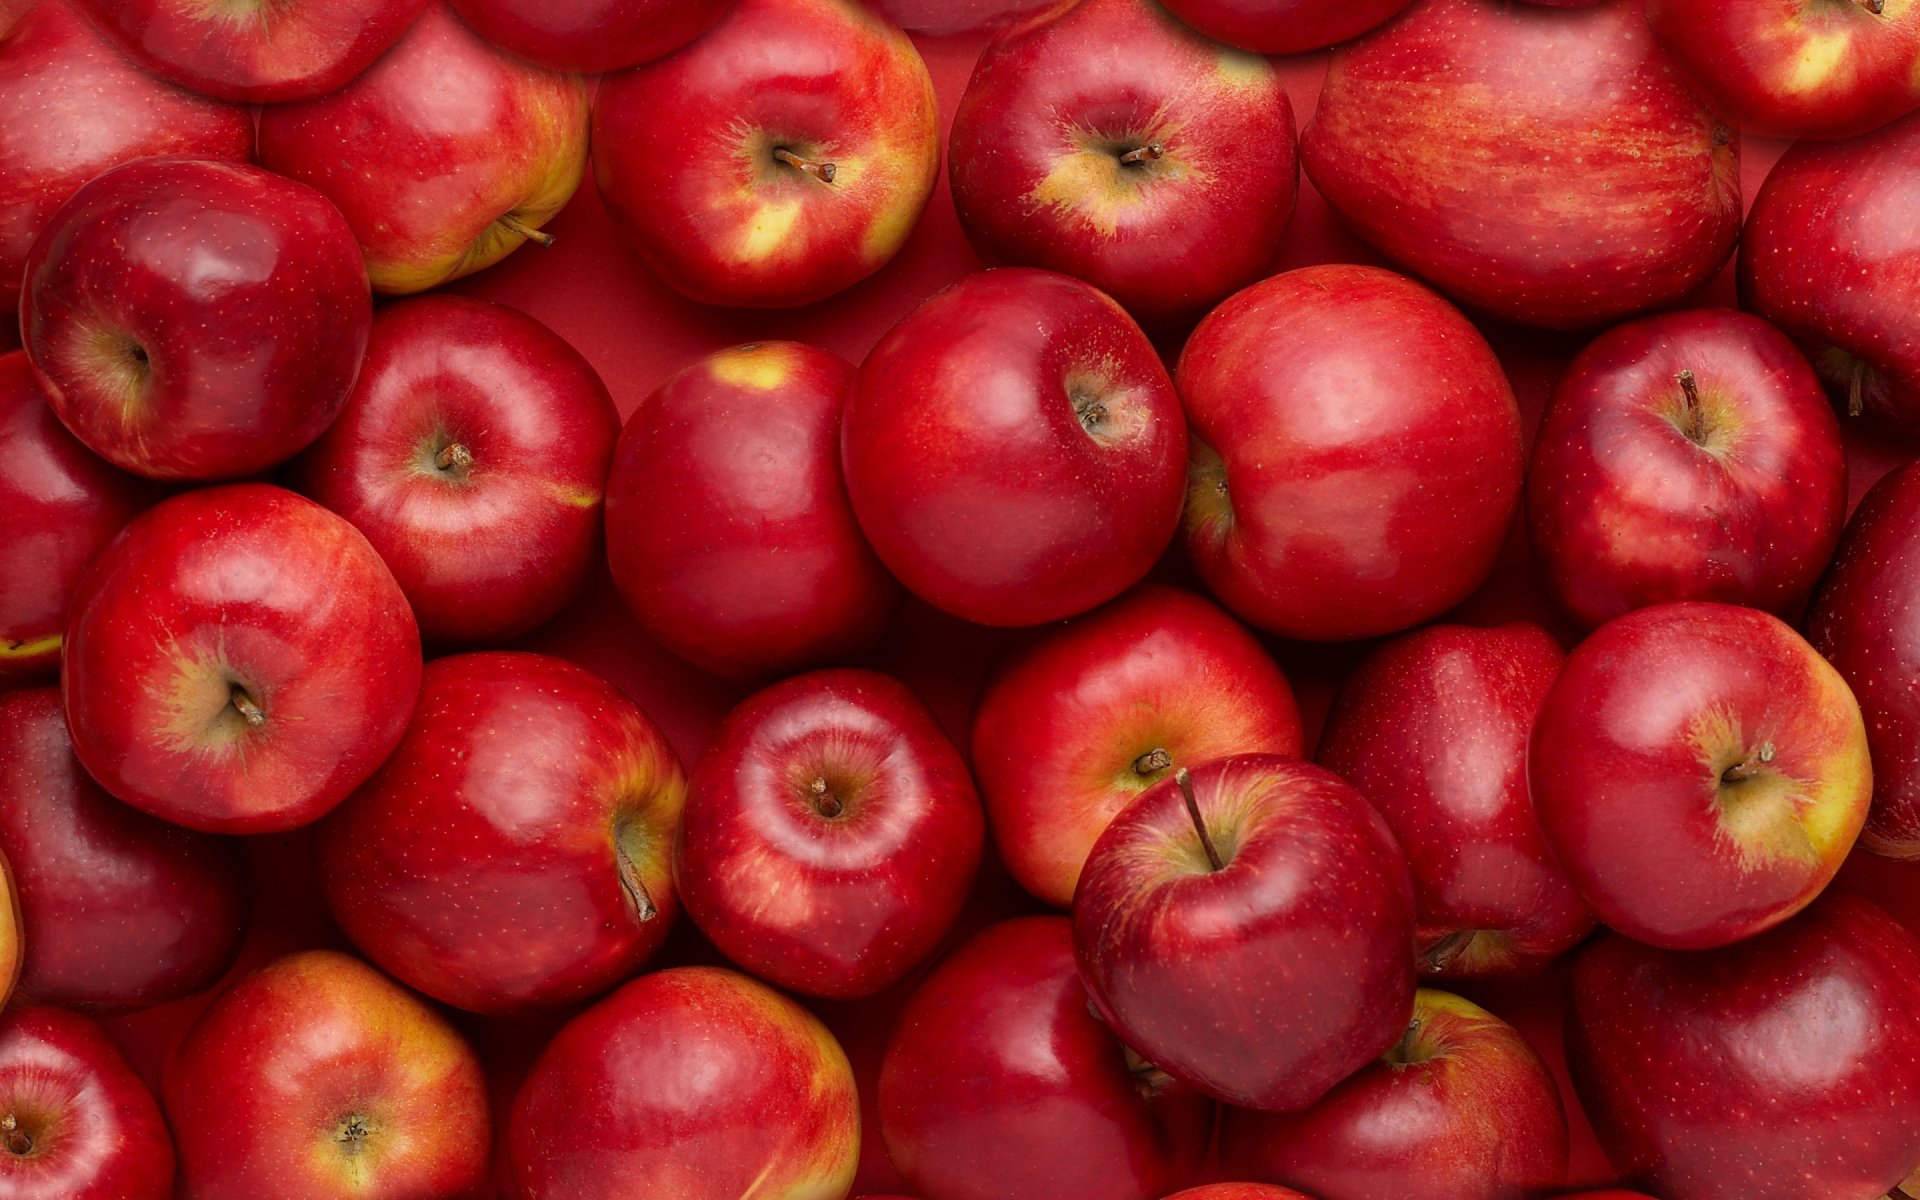 Nhìn vào hình ảnh táo, có thể bạn sẽ không khỏi cảm thấy ánh mắt của mình bừng sáng. Táo thơm, táo ngọt cùng độ dẻo như kẹo sẽ làm cho bạn không thể dừng lại. Thật đáng để chúng ta khám phá tất cả những lợi ích và hương vị của loại trái cây này.